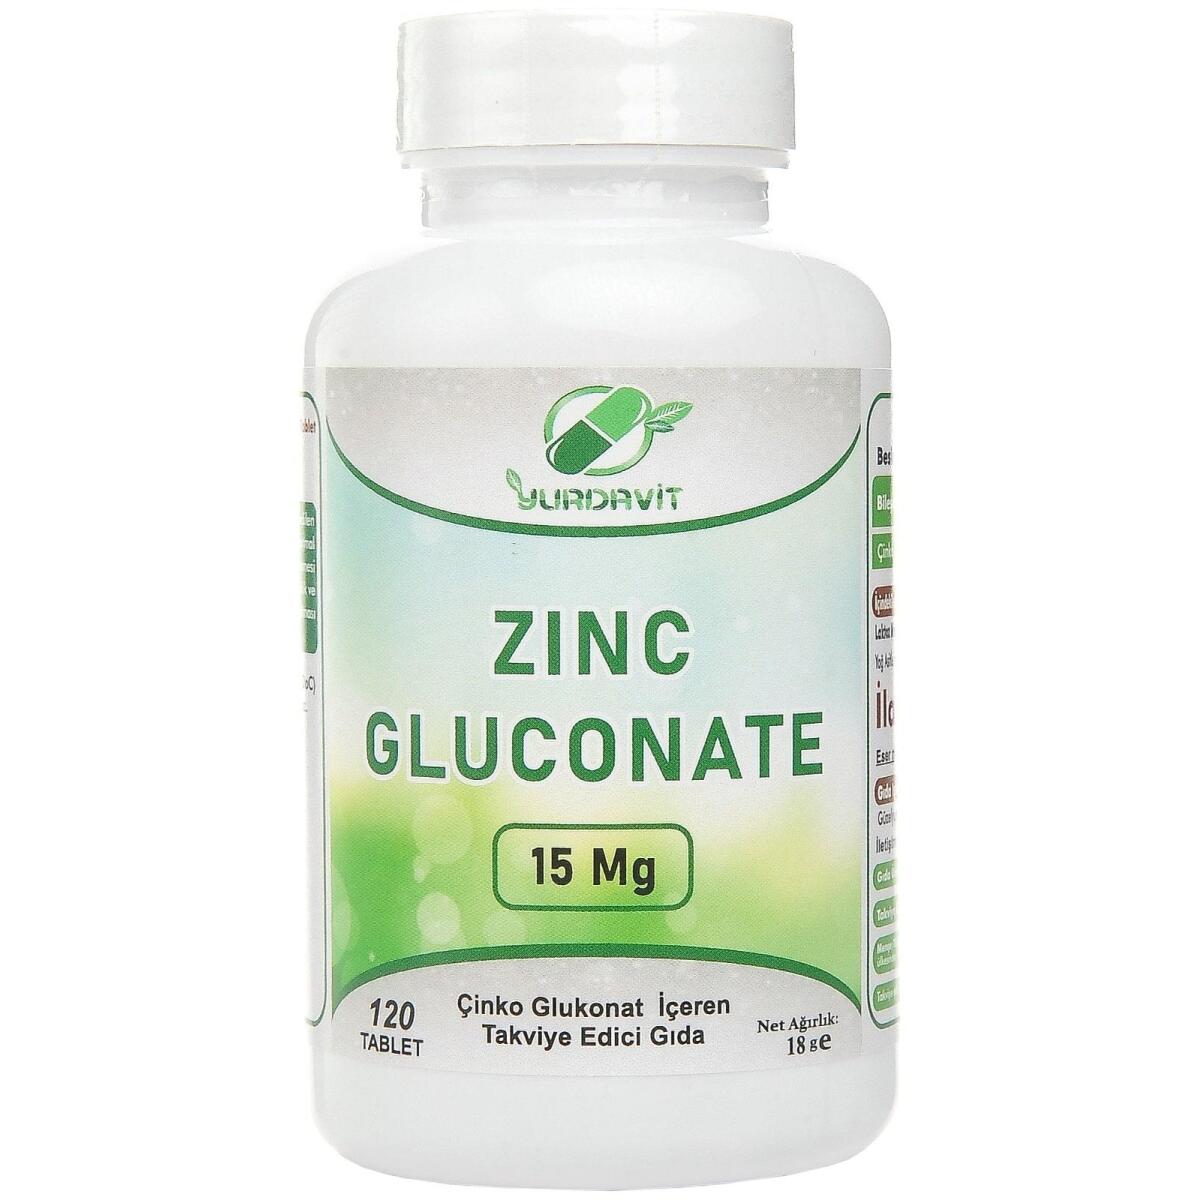 Yurdavit Çinko Glukonat 15 Mg Zinc Gluconate 120 Tablet